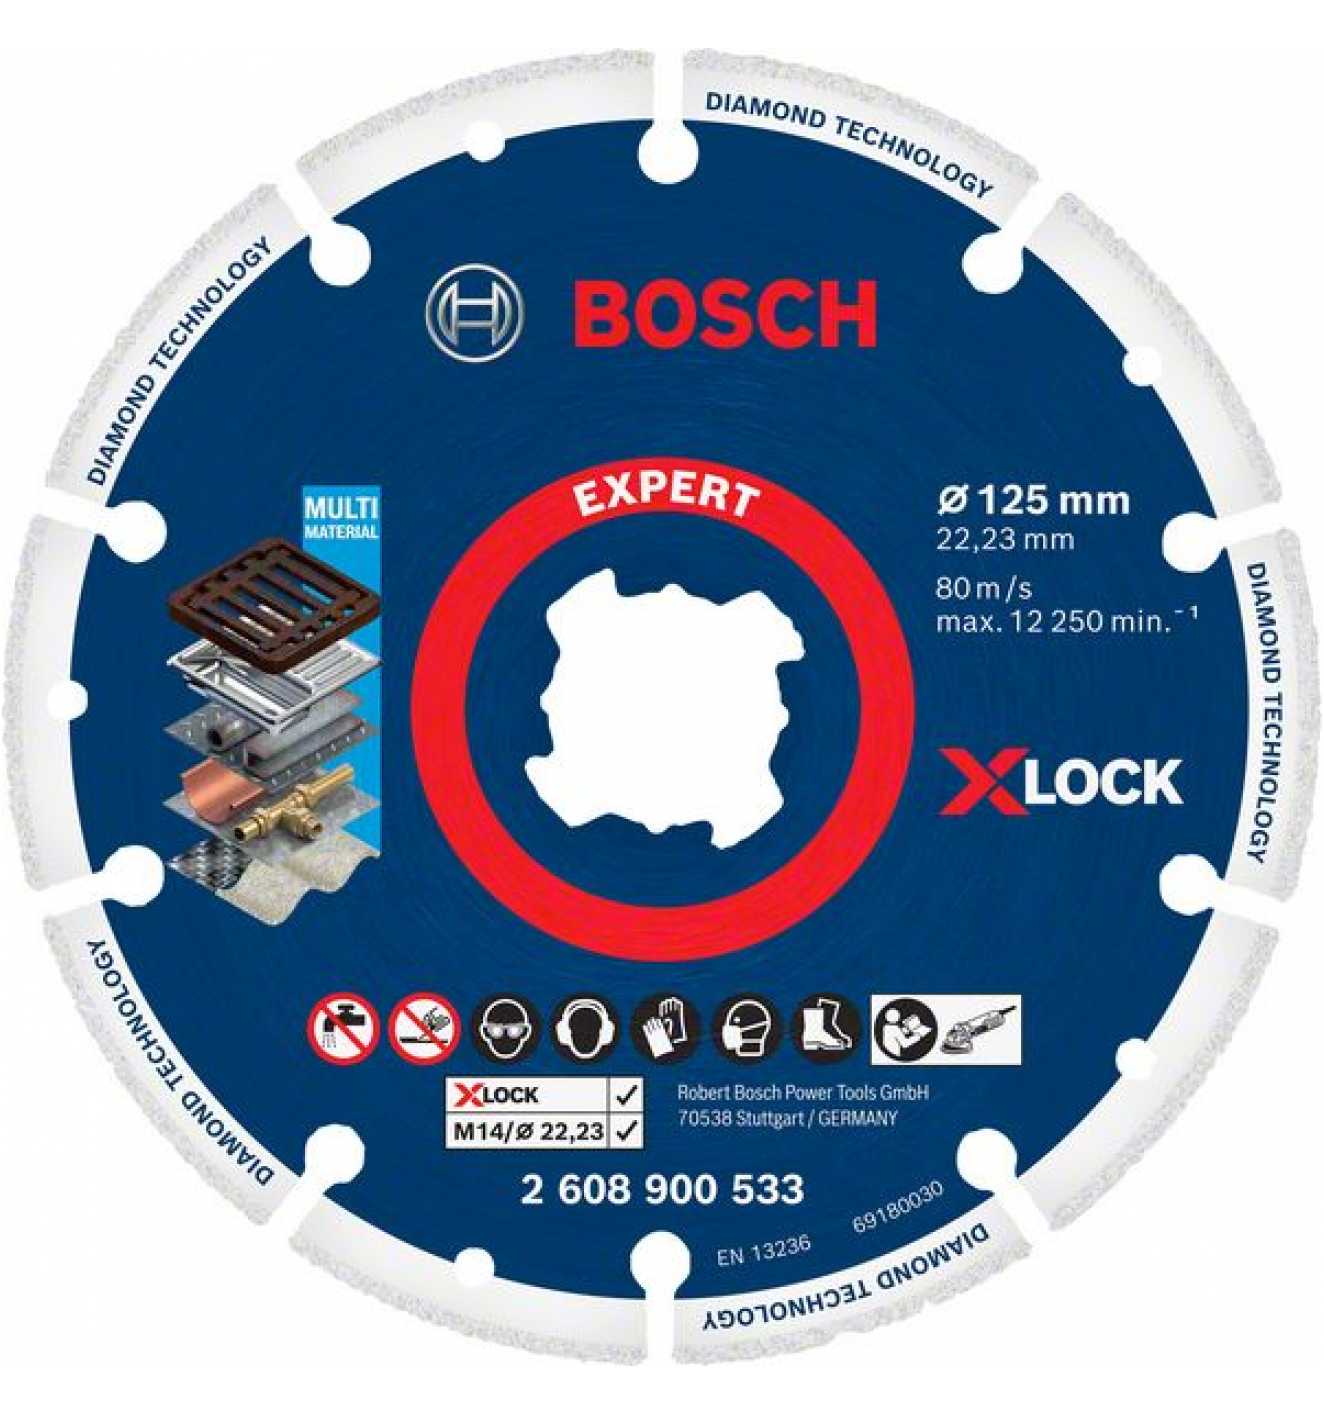 Bosch-EXPERT - Neues Zubehör für dein Werkzeug - Abb. Bosch Expert Diamond Metal Wheel X-LOCK Trennscheibe